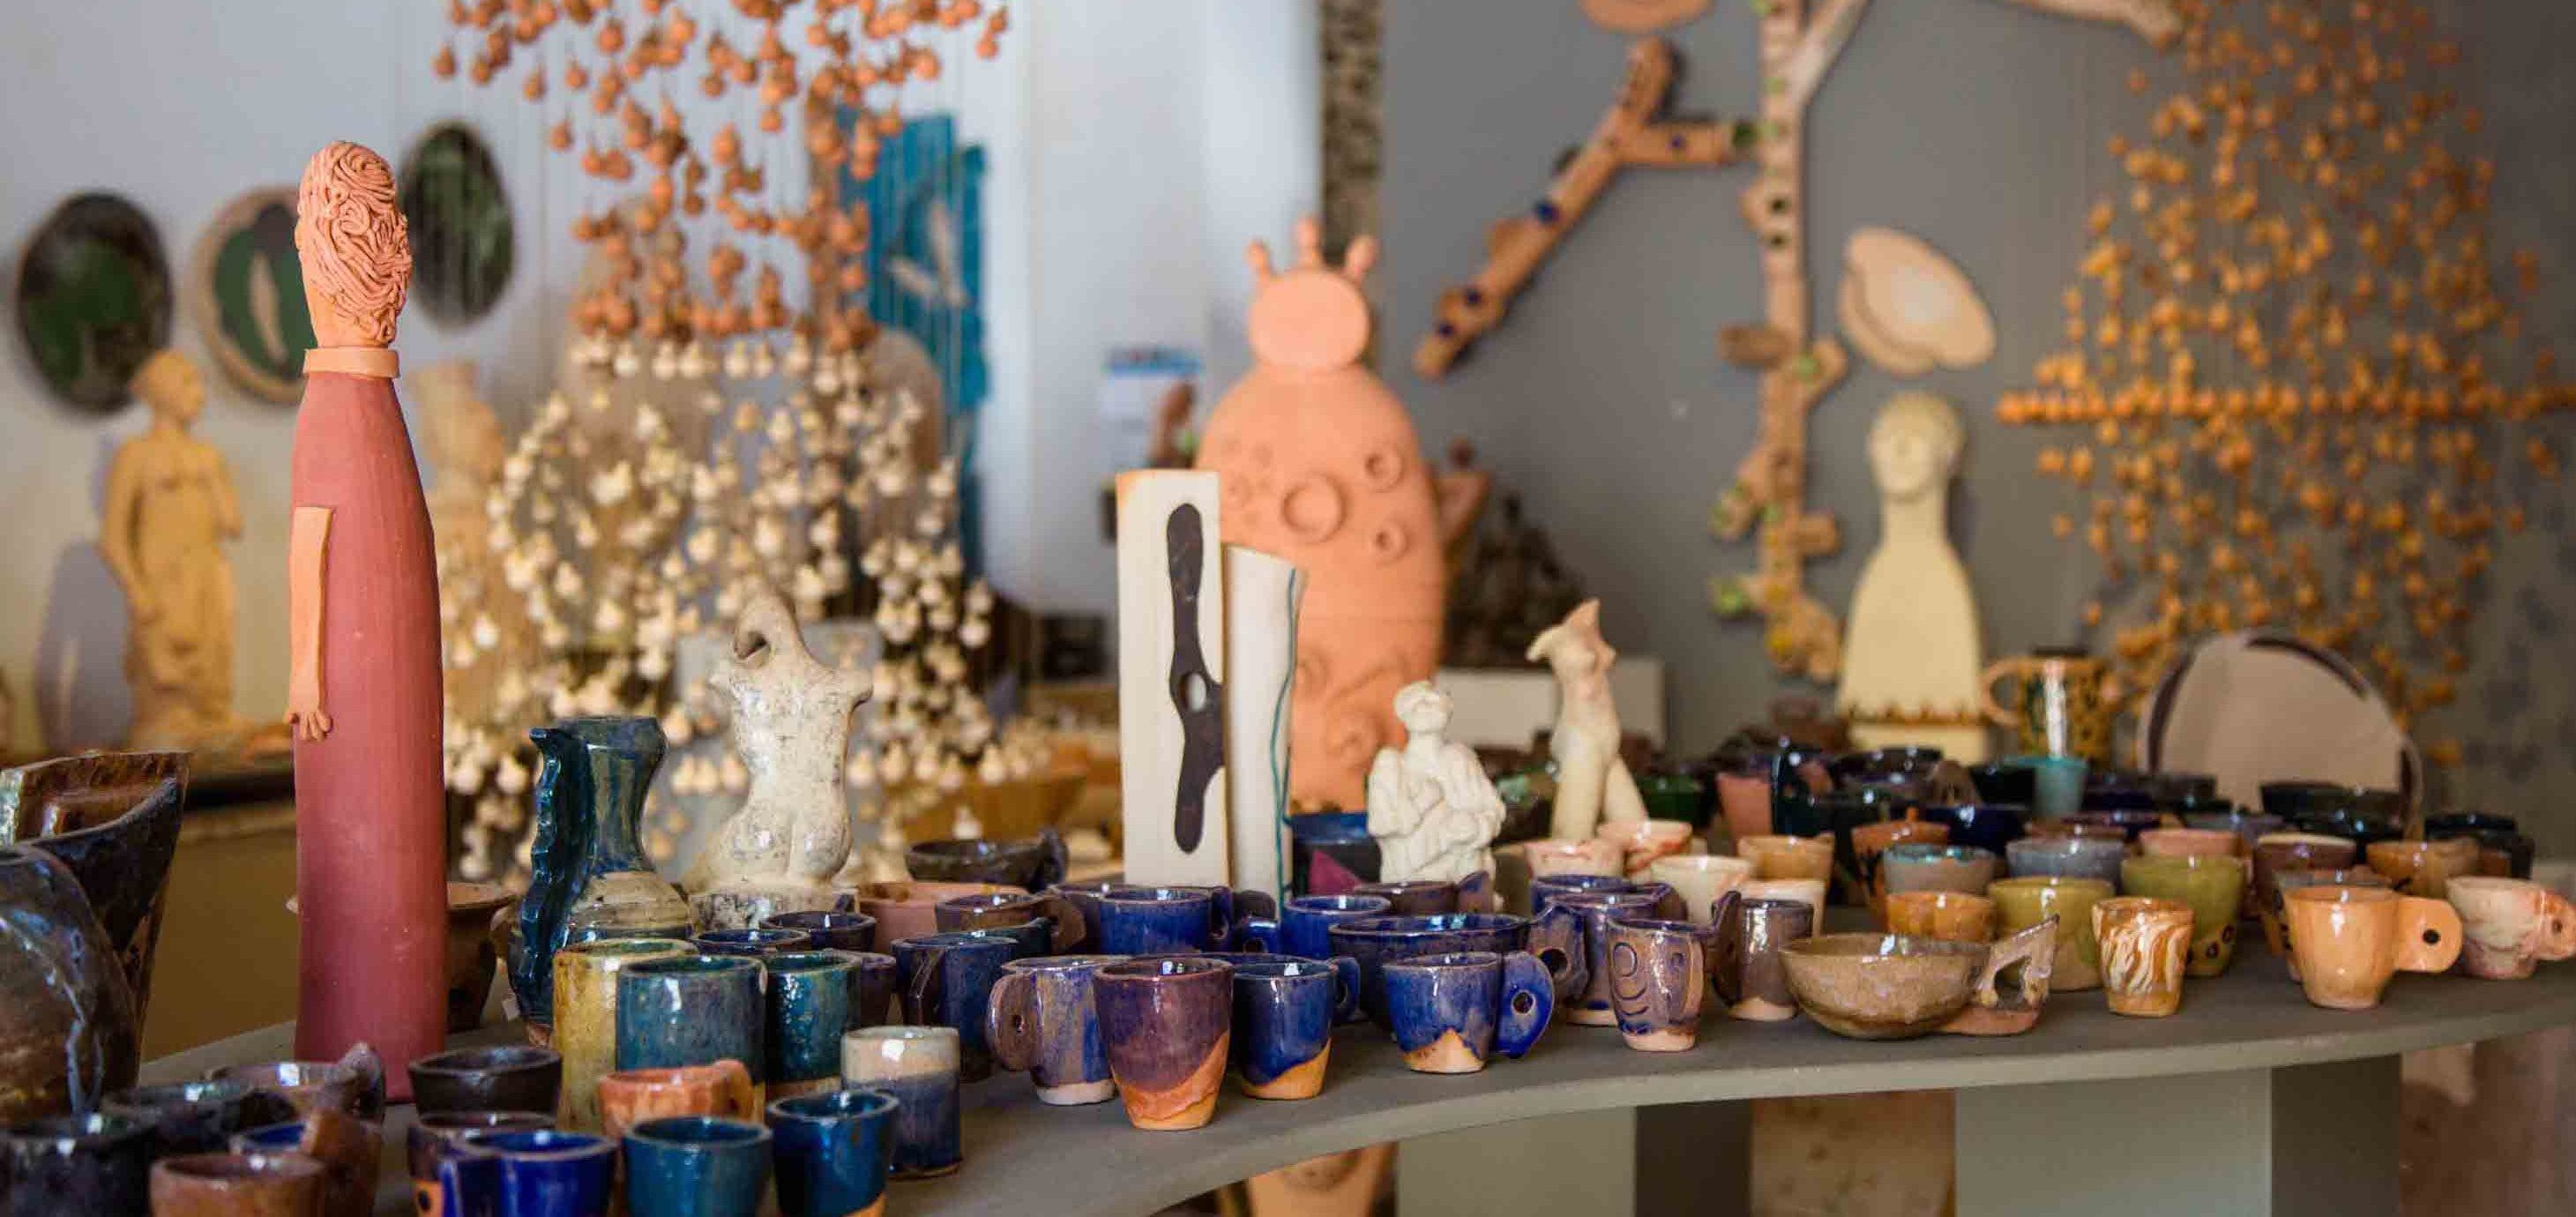 XIII Encontro de Ceramistas vai reunir artistas e admiradores do artesanato, em Paraty